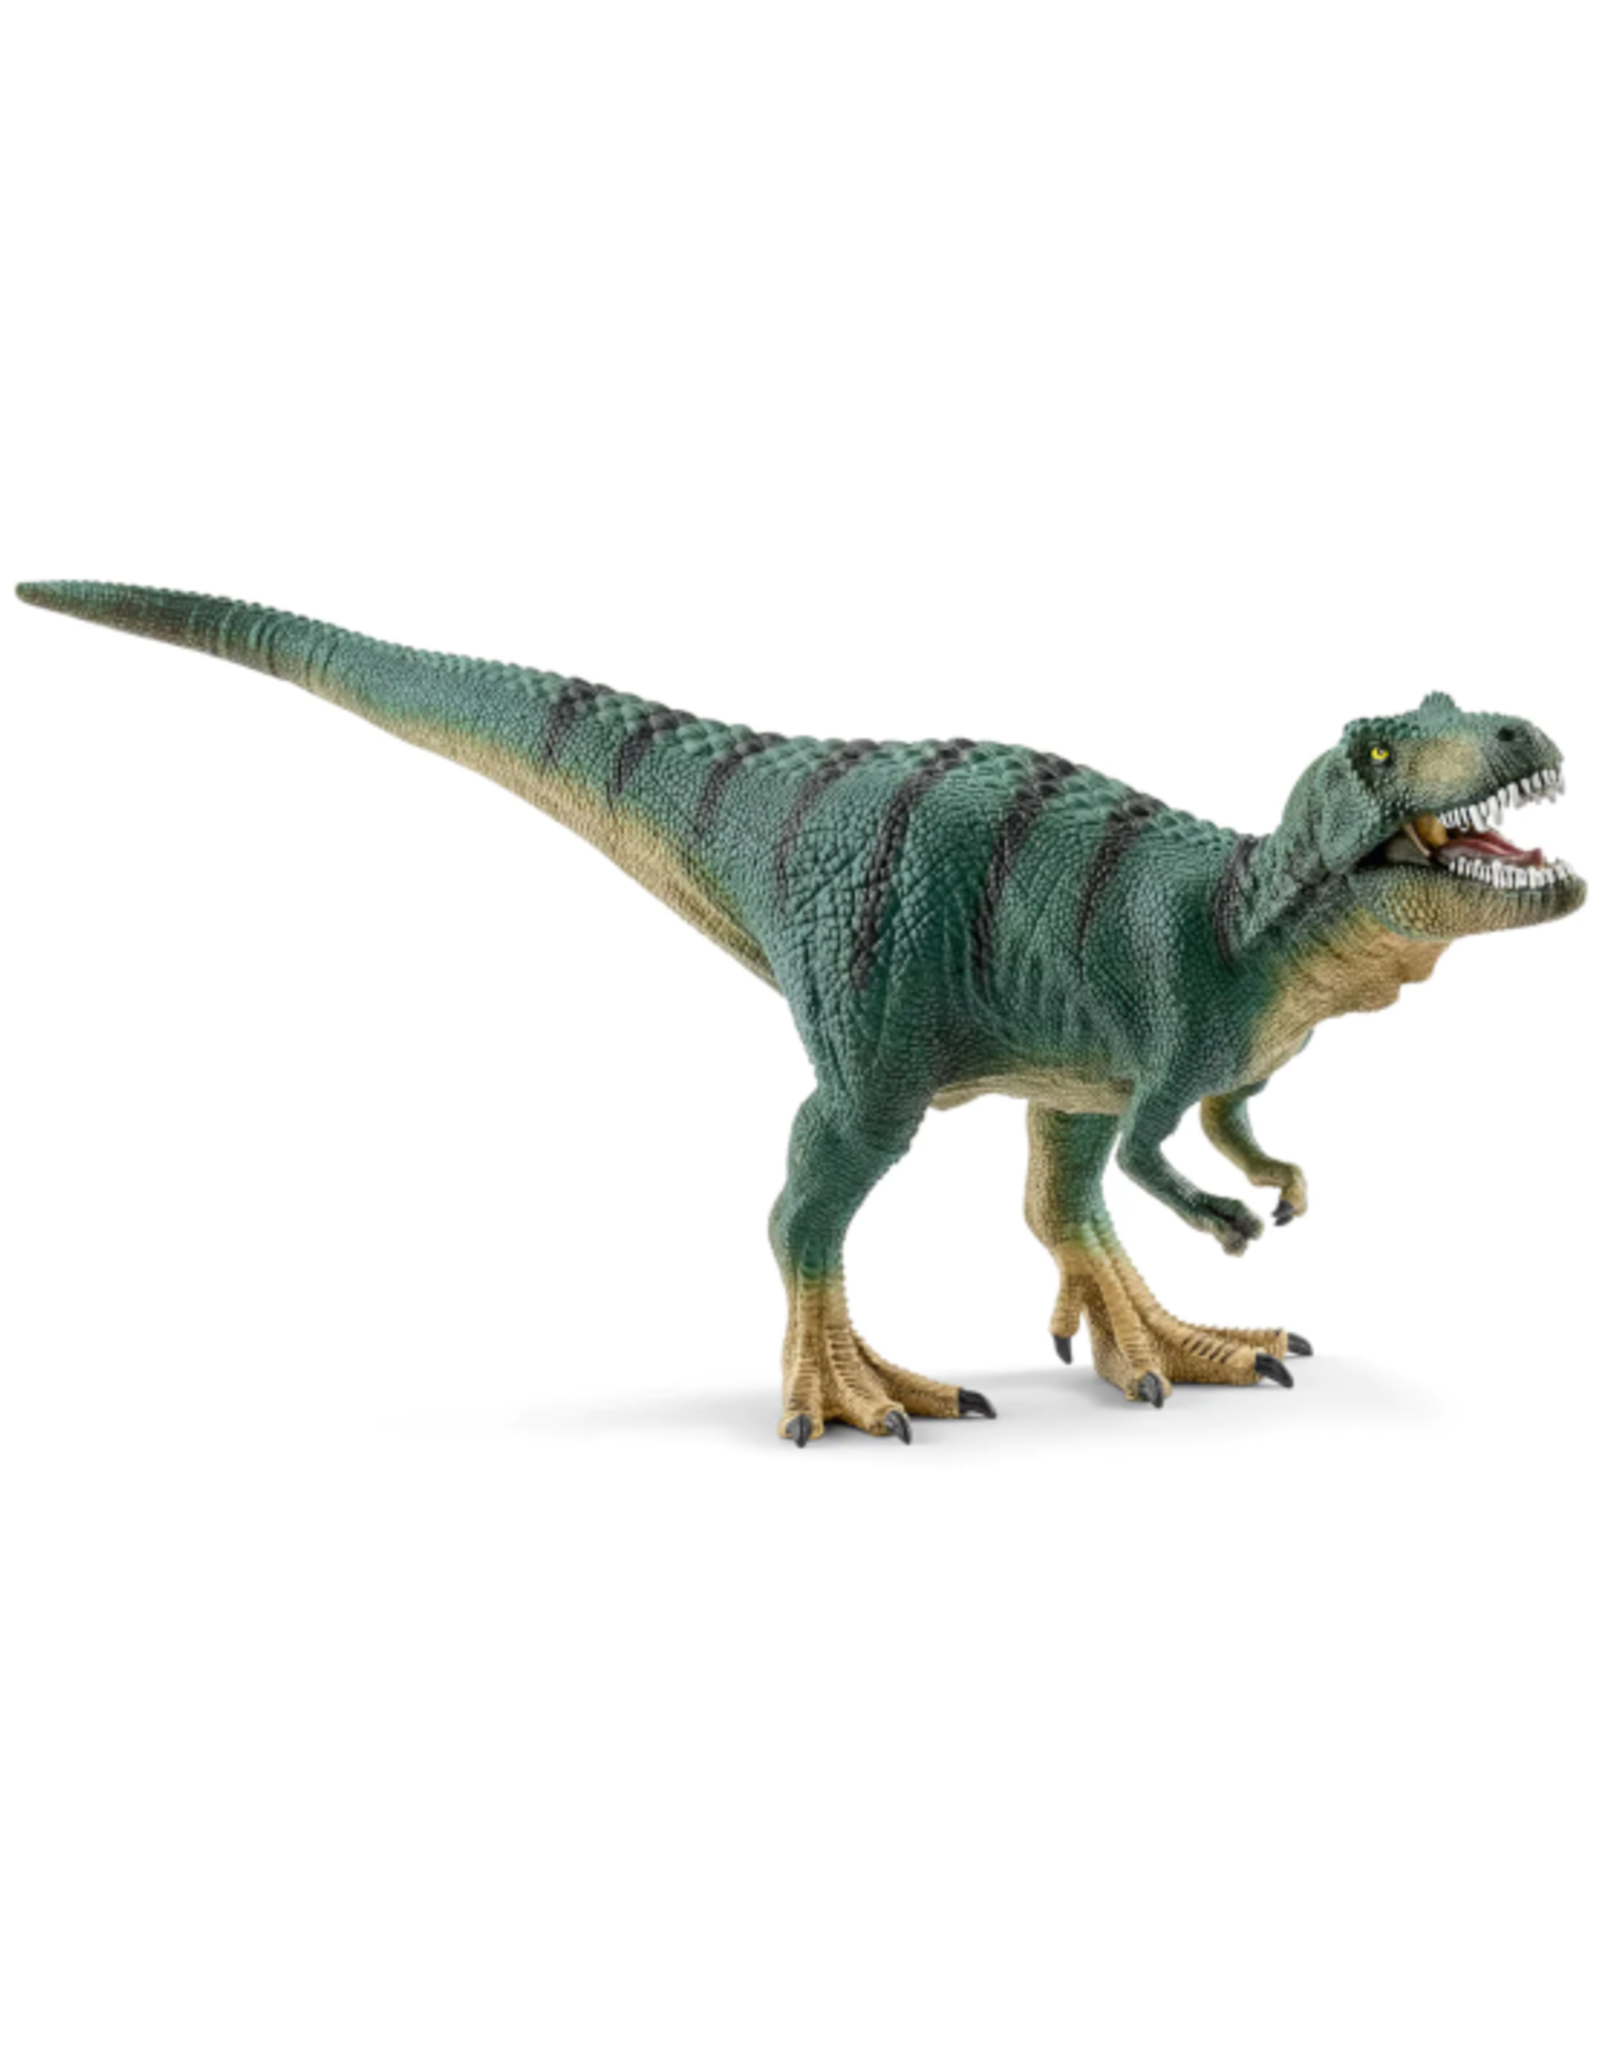 Schleich Schleich - Dinosaurs - 15007 - Tyrannosaurus Rex Juvenile